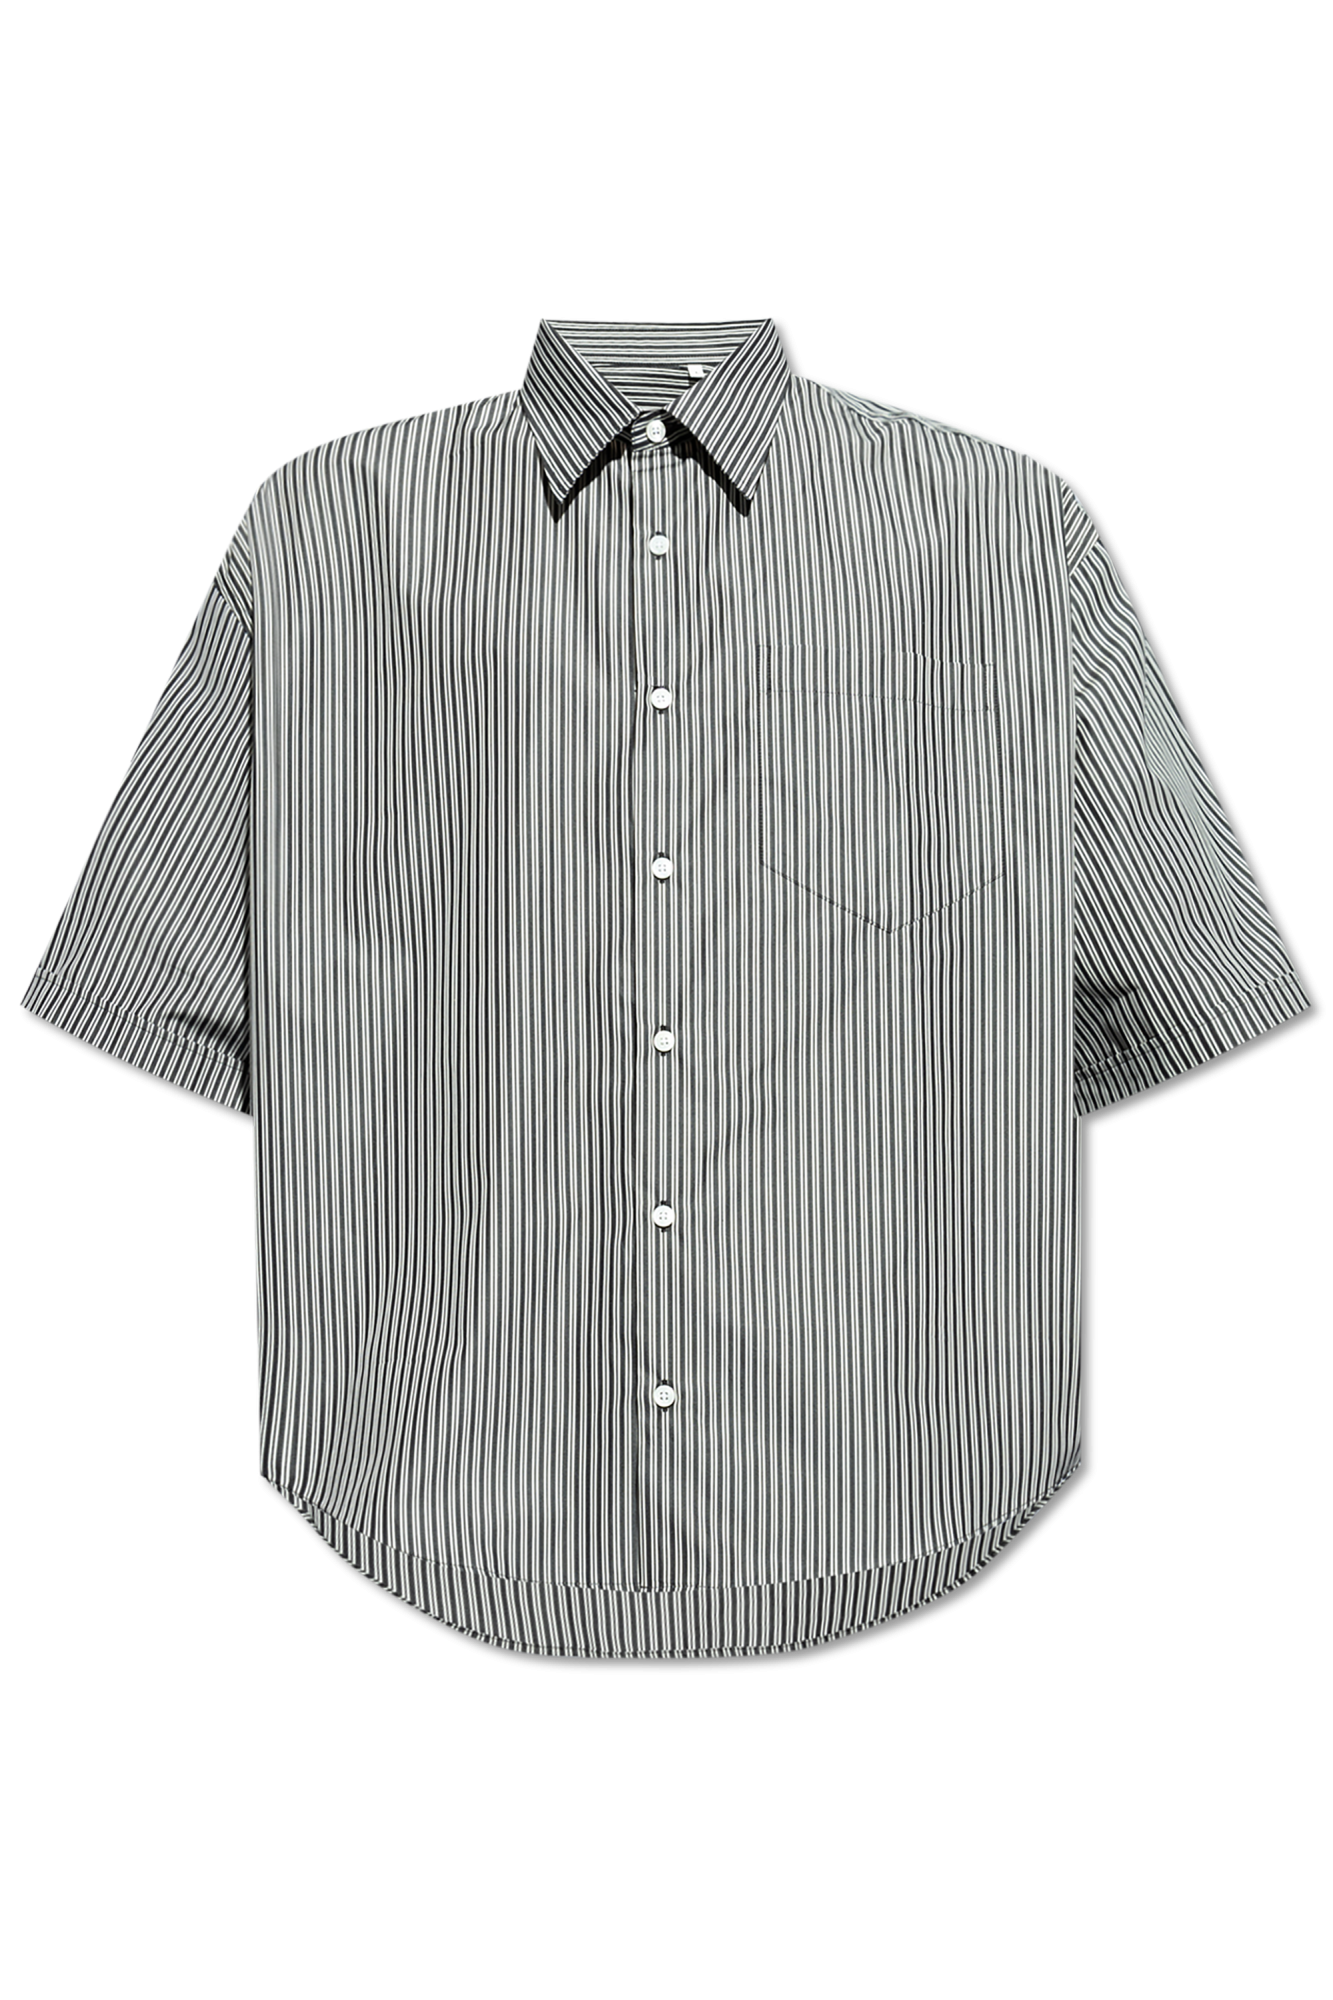 zebra appliqué polo shirt Striped pattern shirt